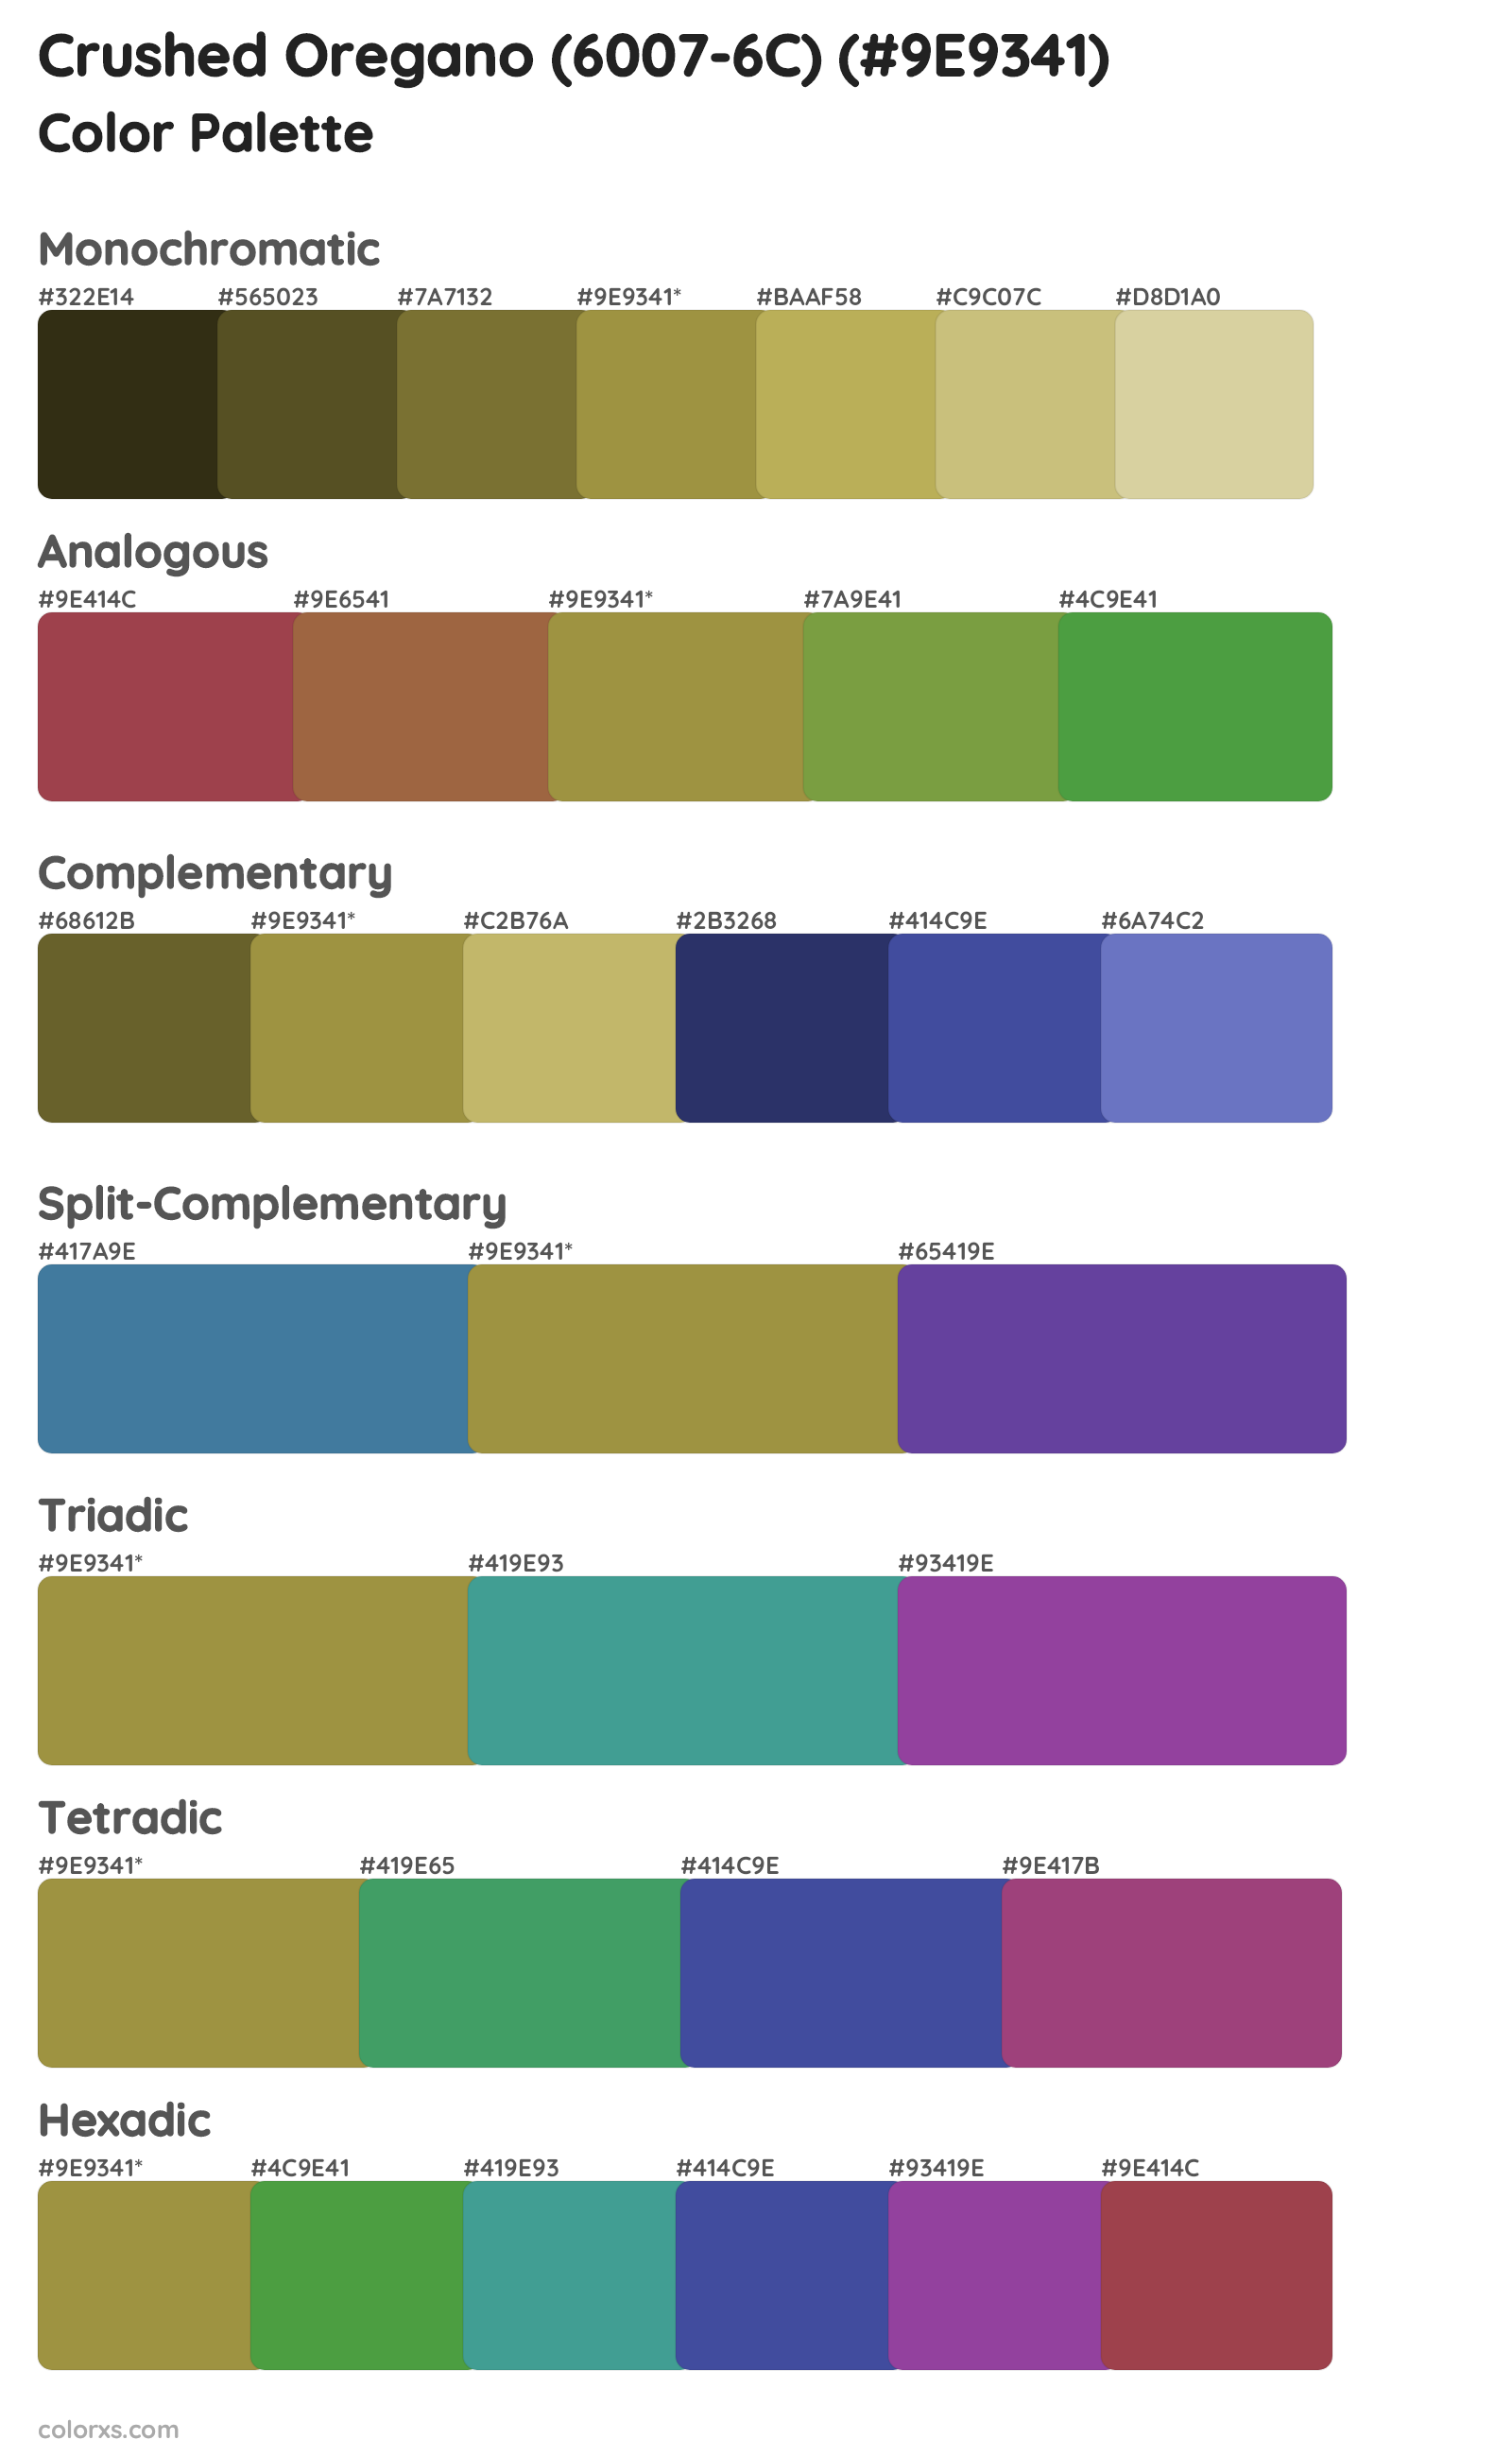 Crushed Oregano (6007-6C) Color Scheme Palettes